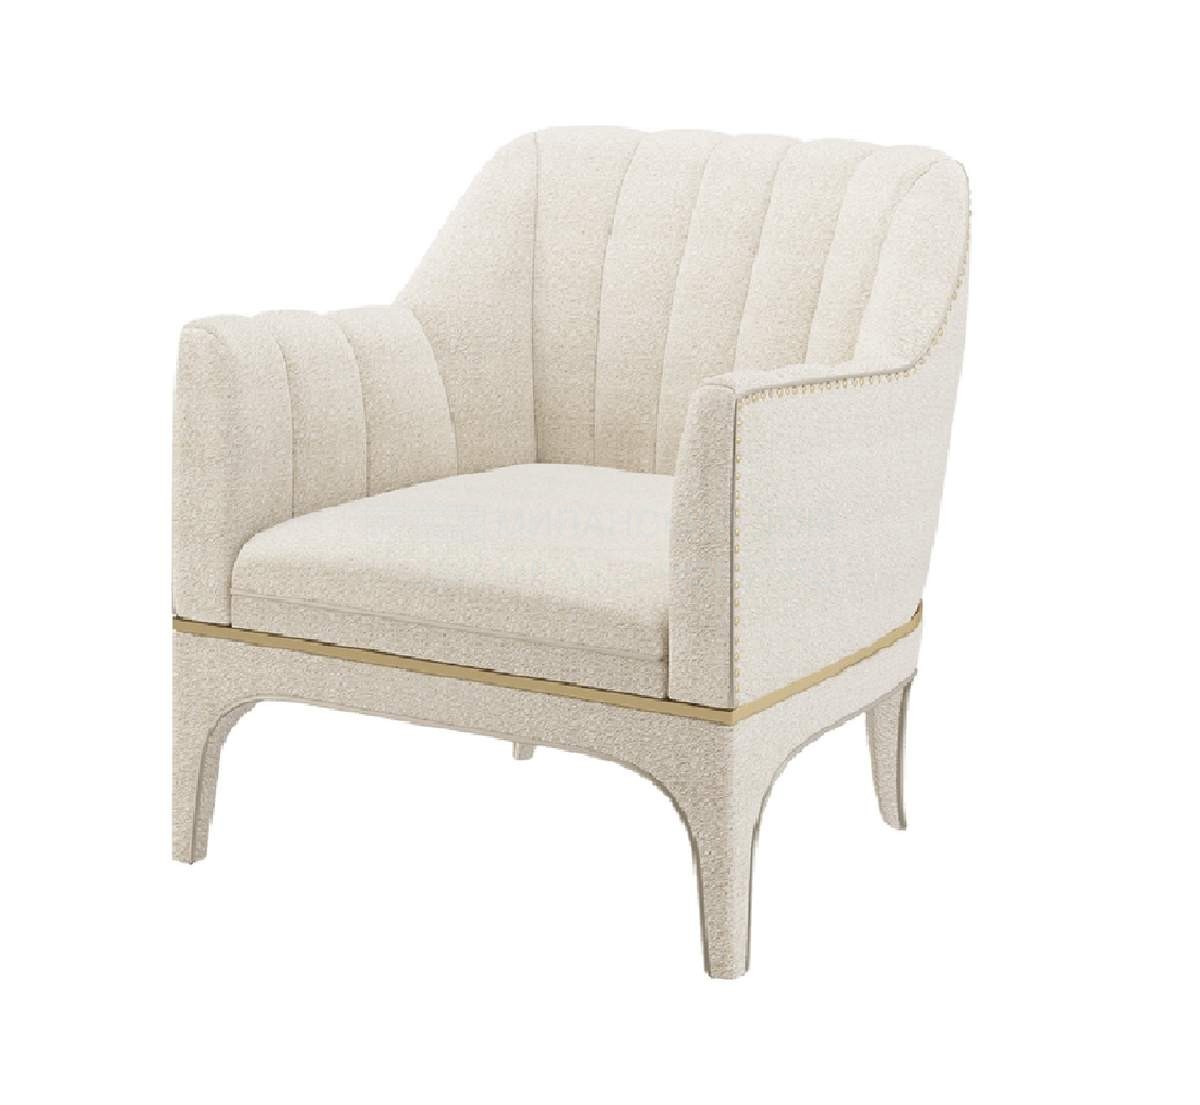 Кресло Verdi armchair из Португалии фабрики FRATO